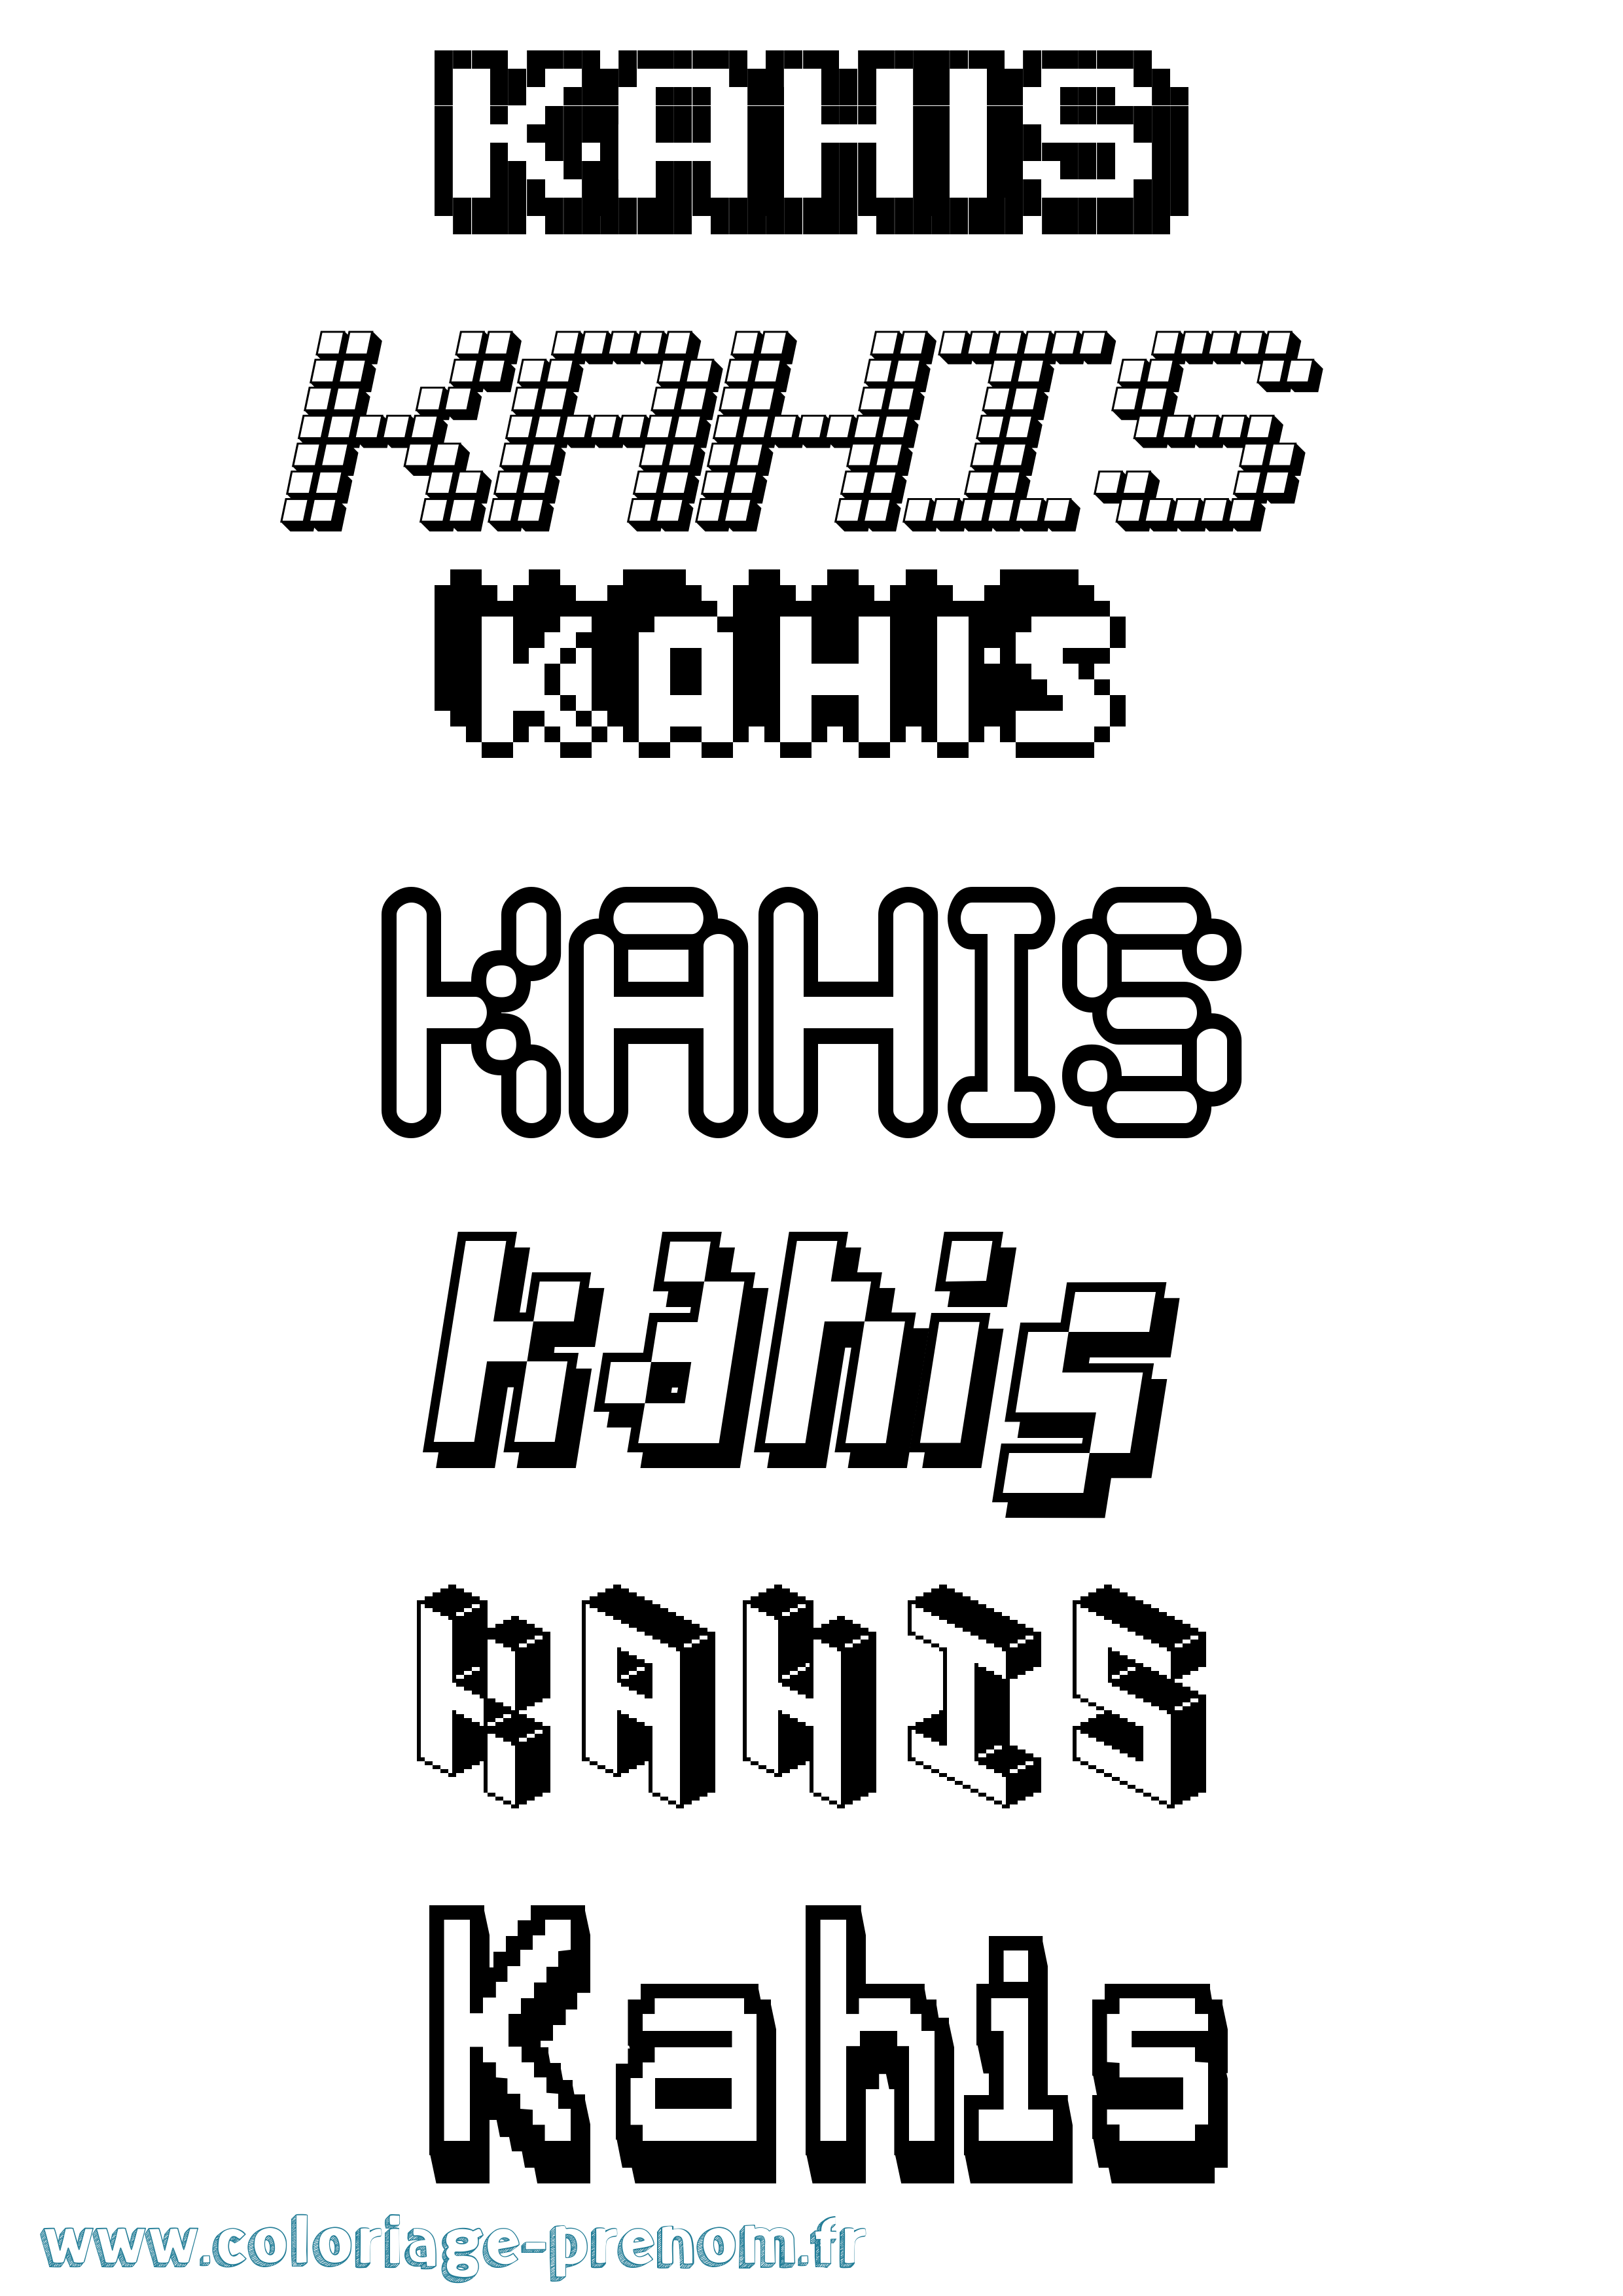 Coloriage prénom Kahis Pixel